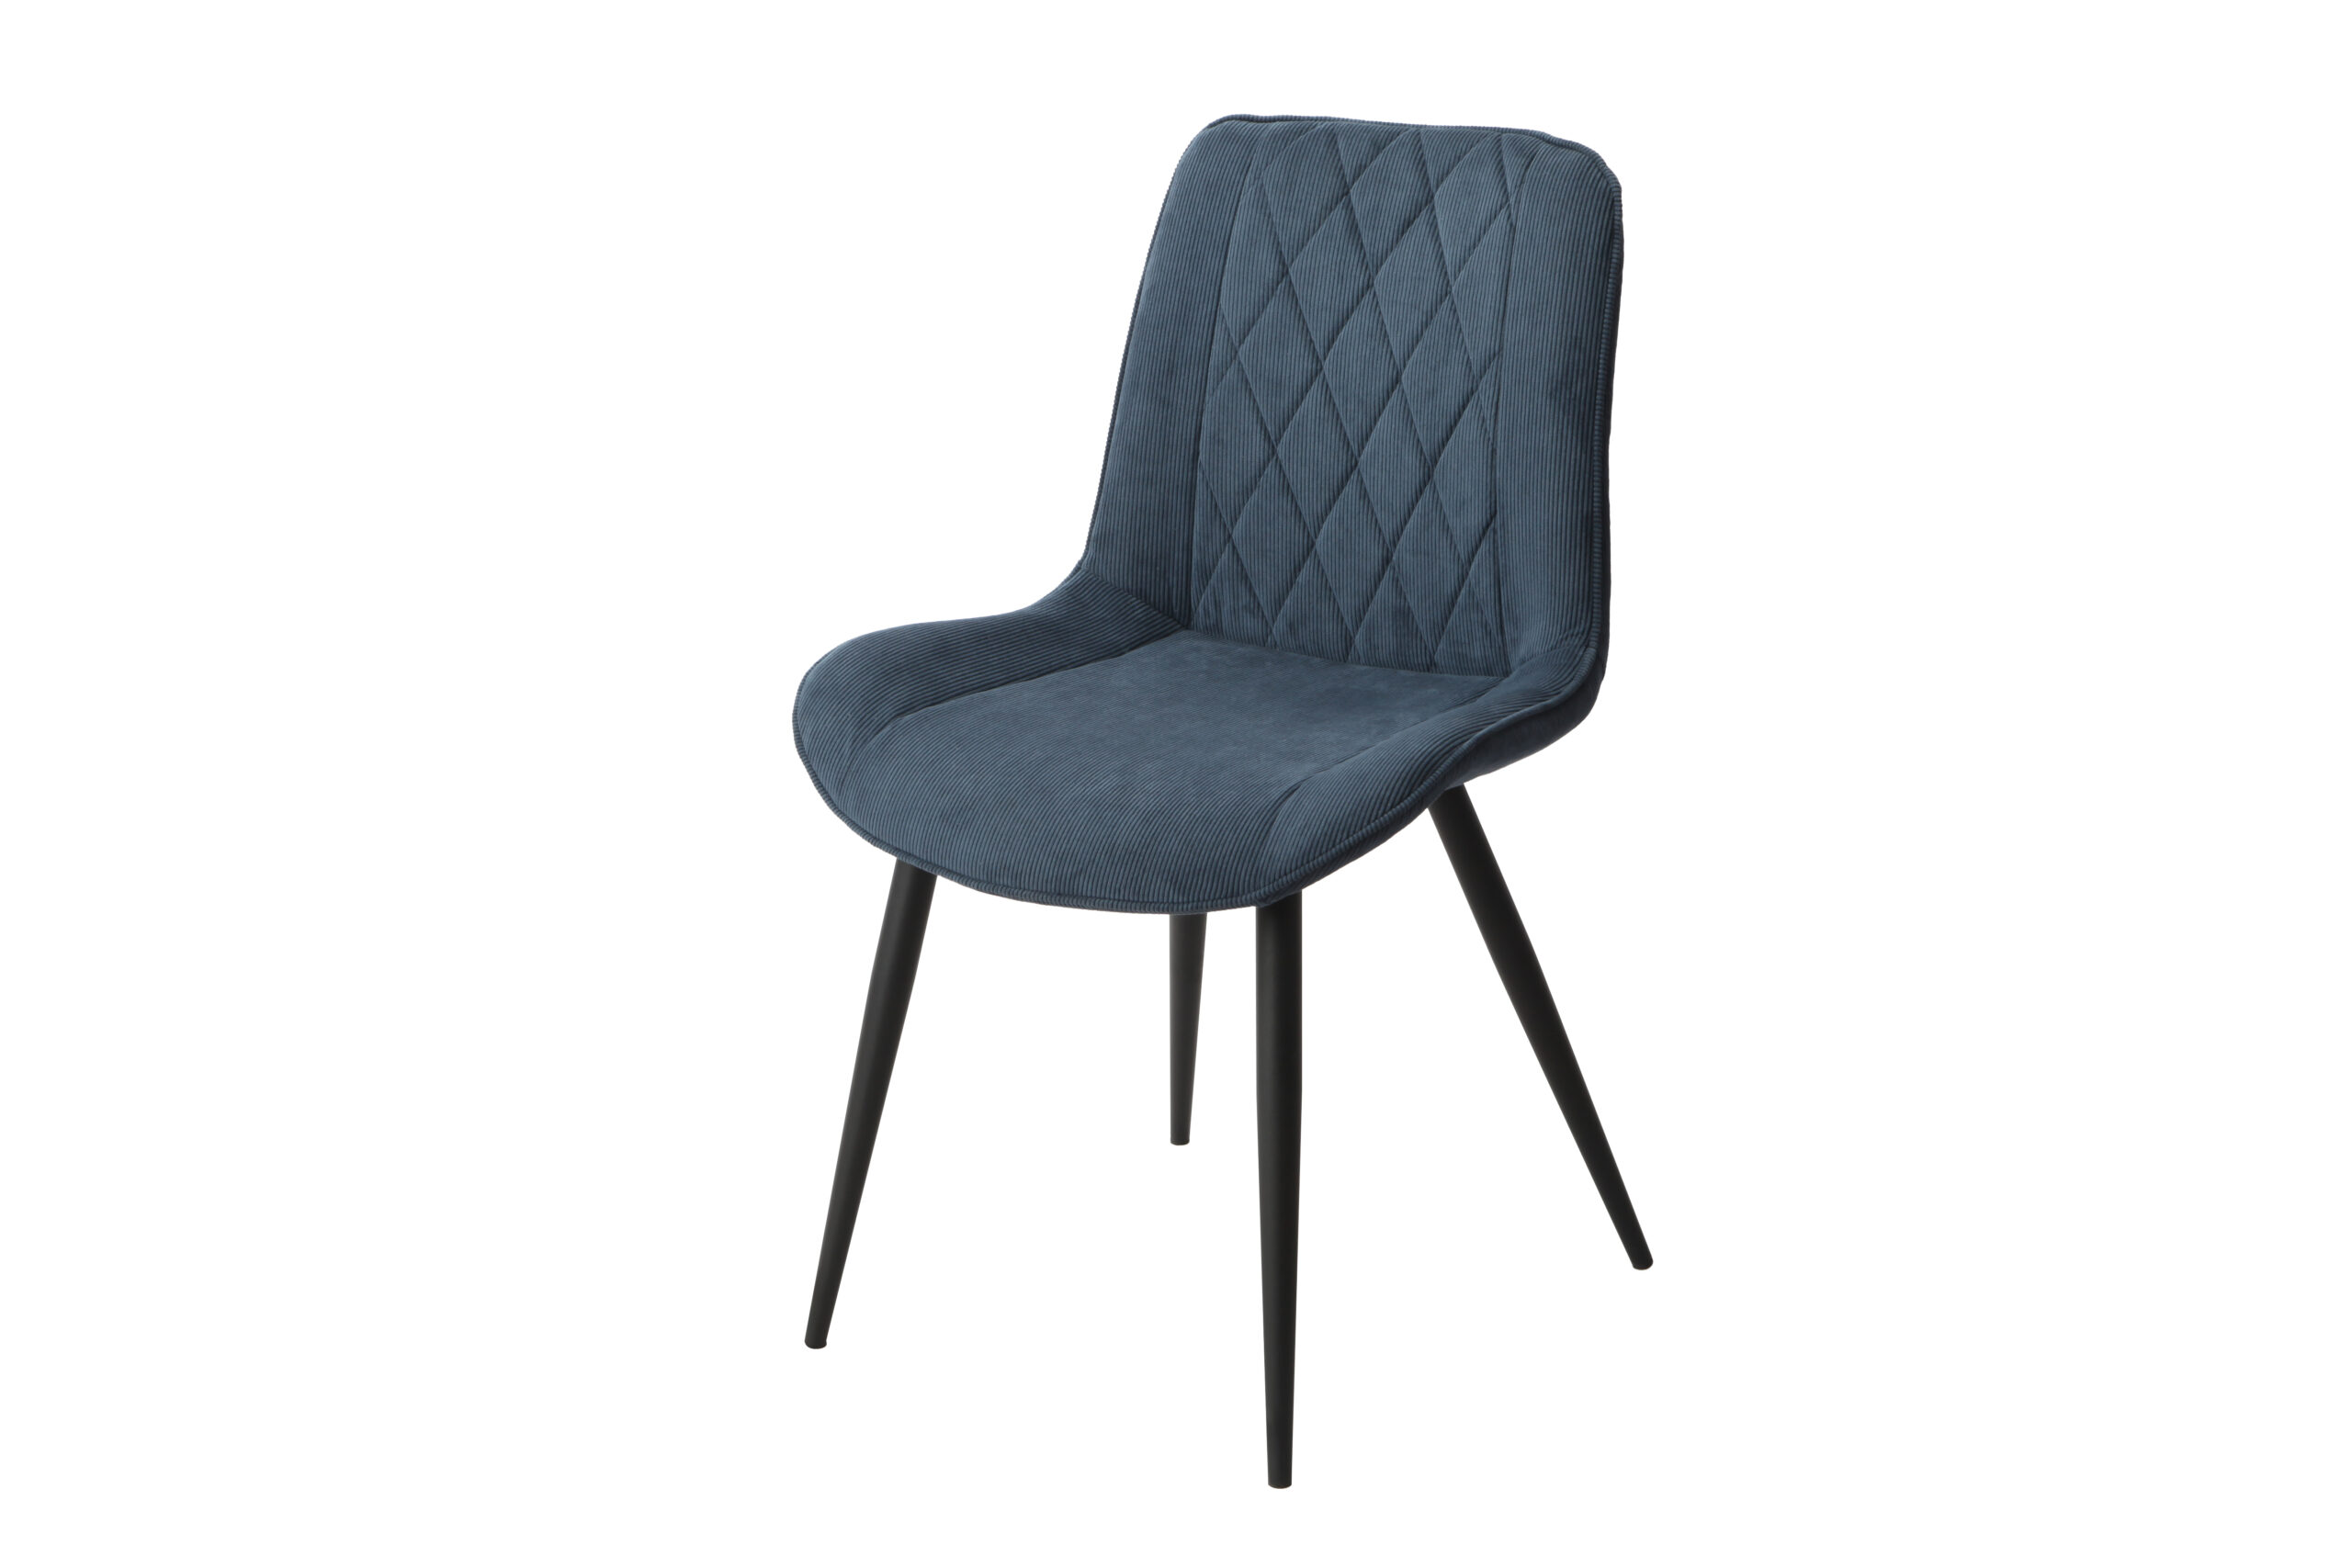 2x Diamond Stitch Blue Cord Fabric Dining Chair